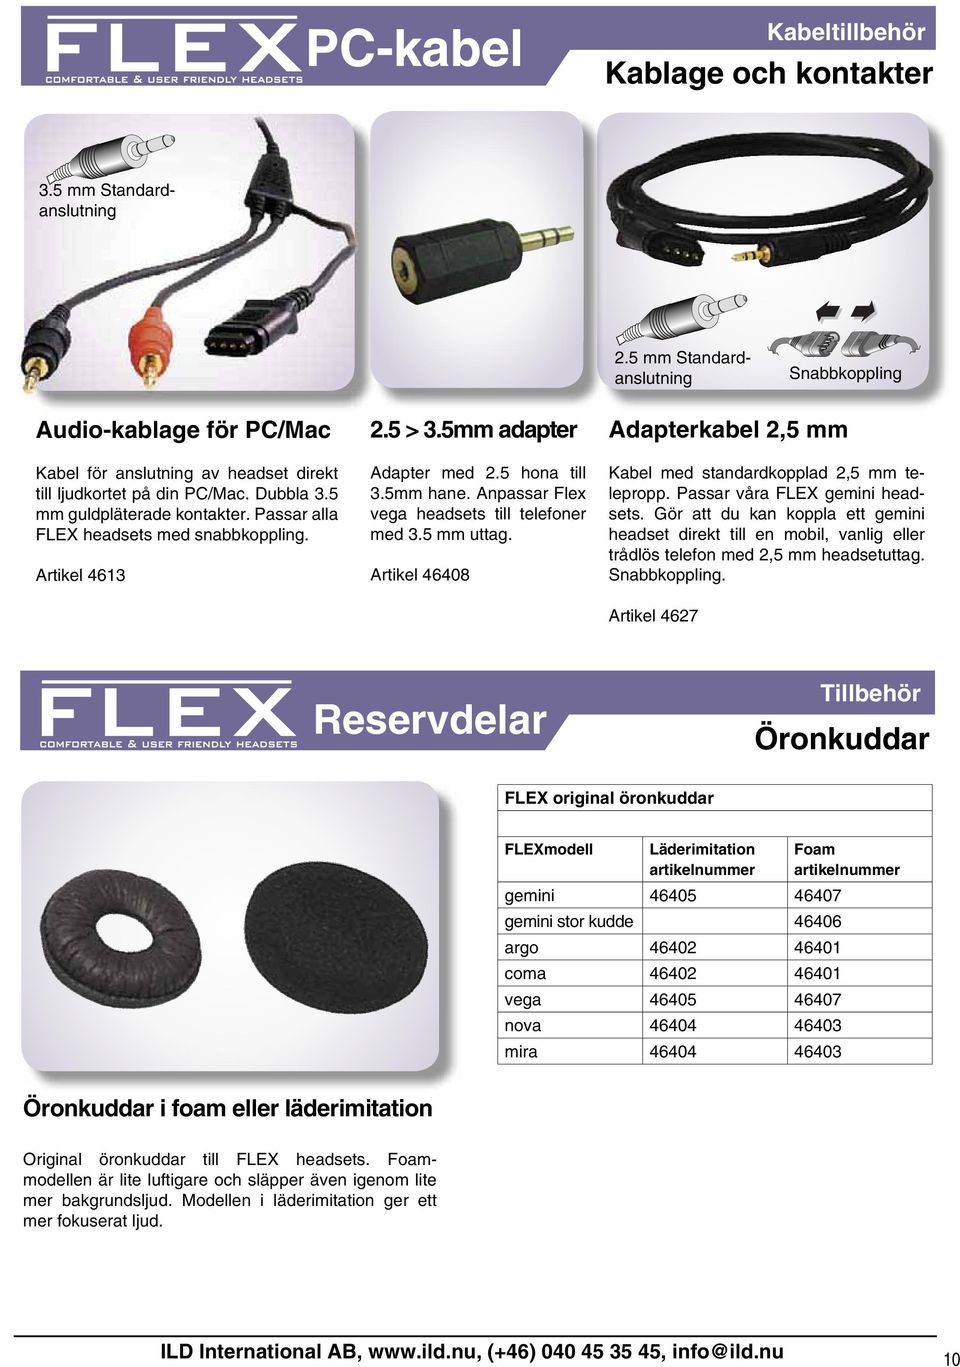 Anpassar Flex vega headsets till telefoner med 3.5 mm uttag. Artikel 46408 Adapterkabel 2,5 mm Kabel med standardkopplad 2,5 mm telepropp. Passar våra FLEX gemini headsets.